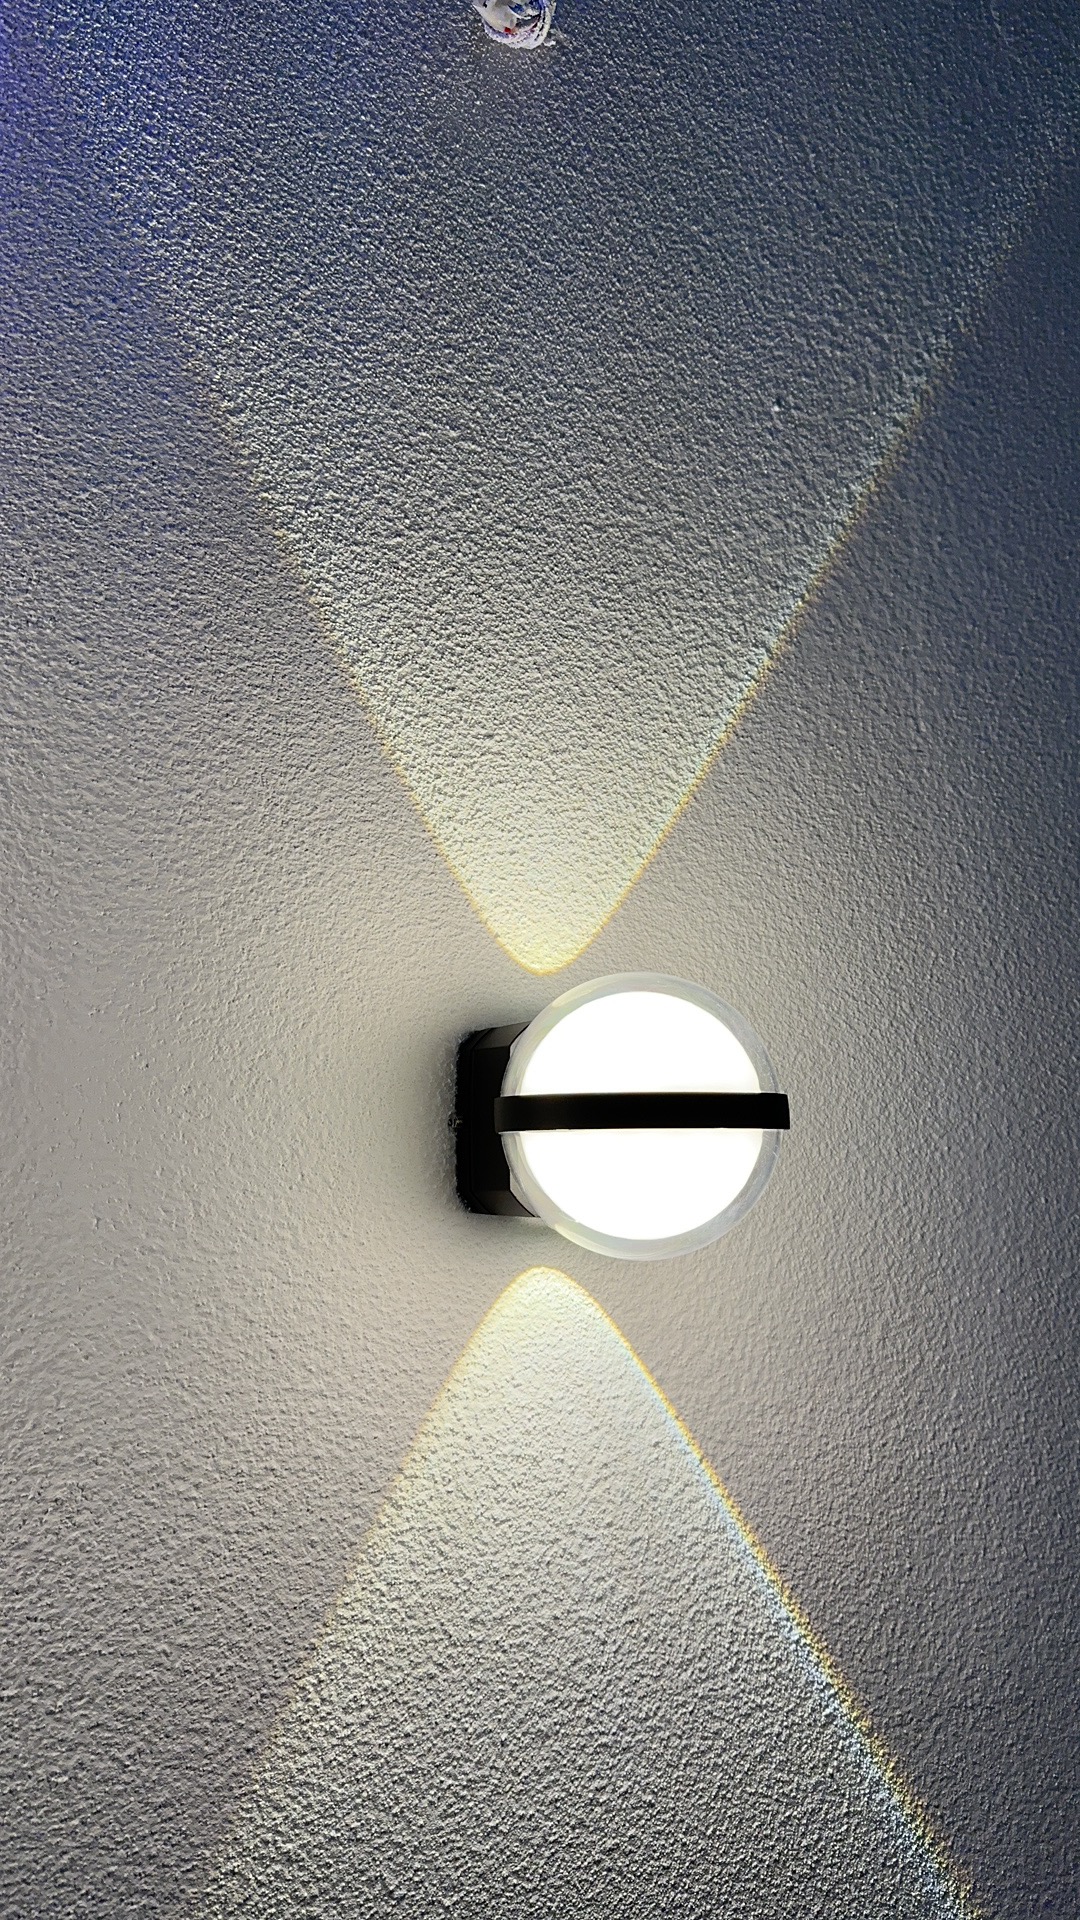 Crystal ball wall lamp